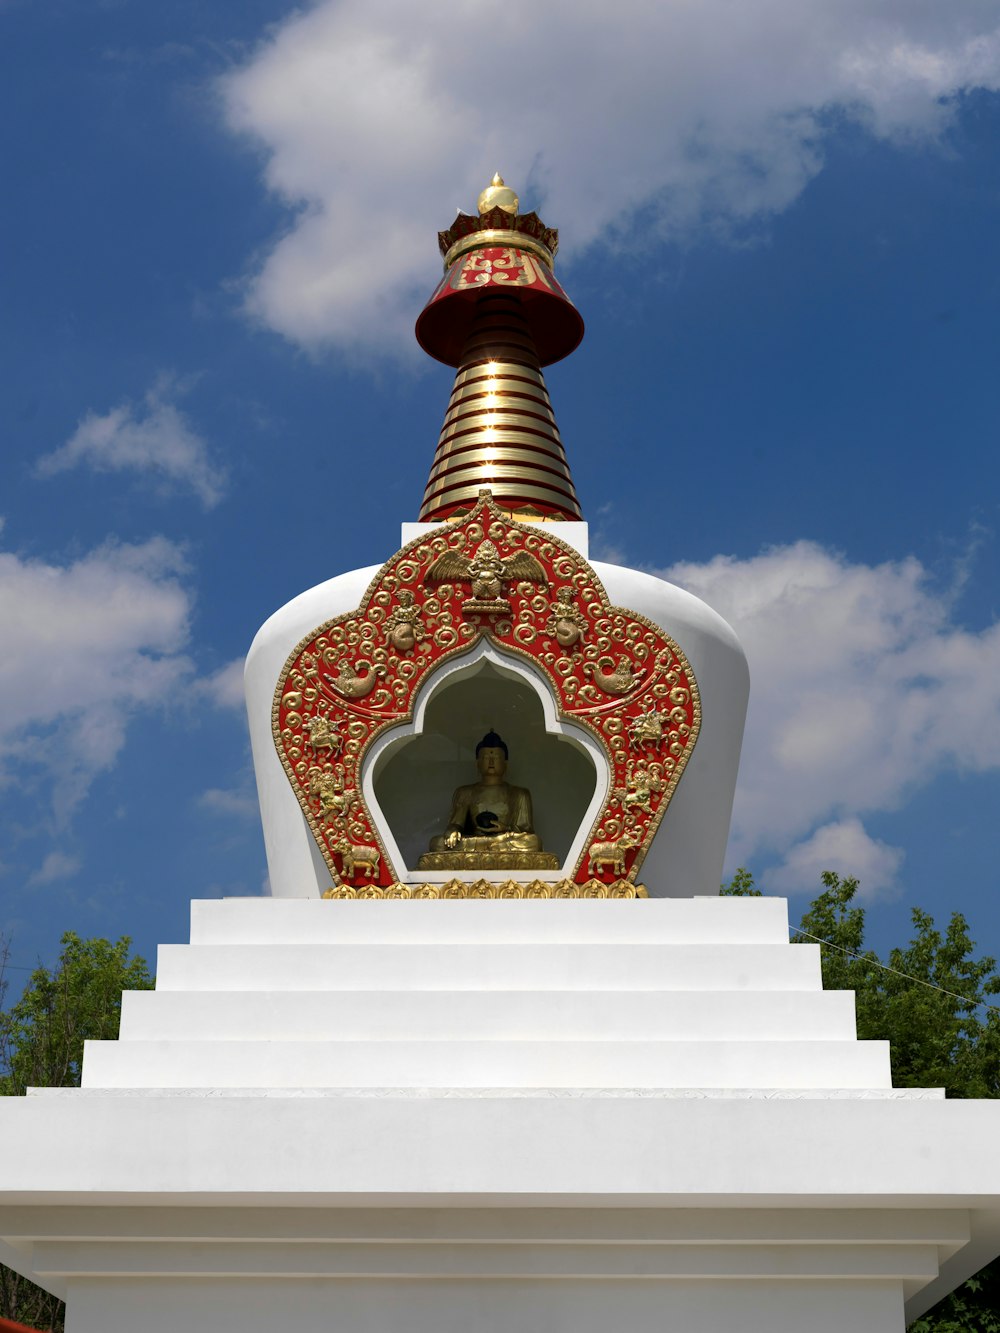 Una estatua dorada y roja en la parte superior de una estructura blanca